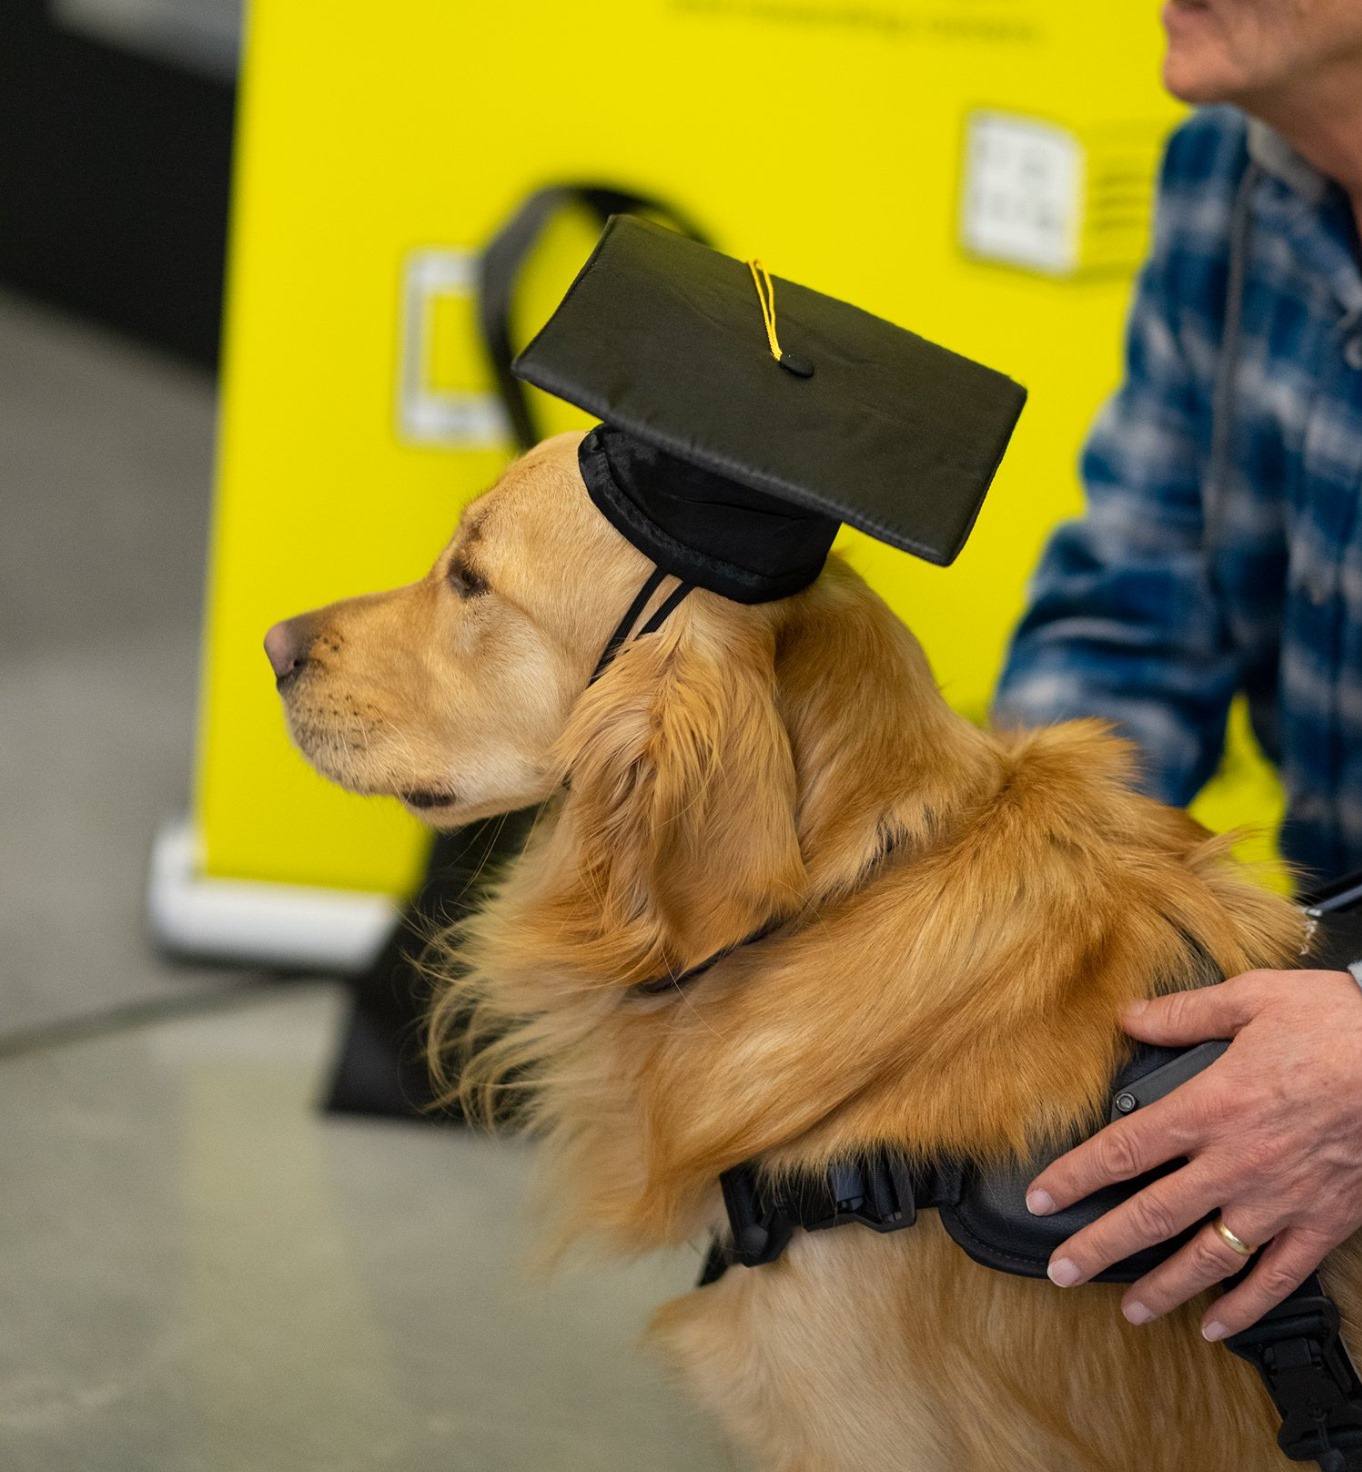 Un chien-guide et son maître lors d'une cérémonie de remise des diplômes. Le maître-chien caresse son chien-guide golden retriever. Le chien porte un chapeau de graduation.